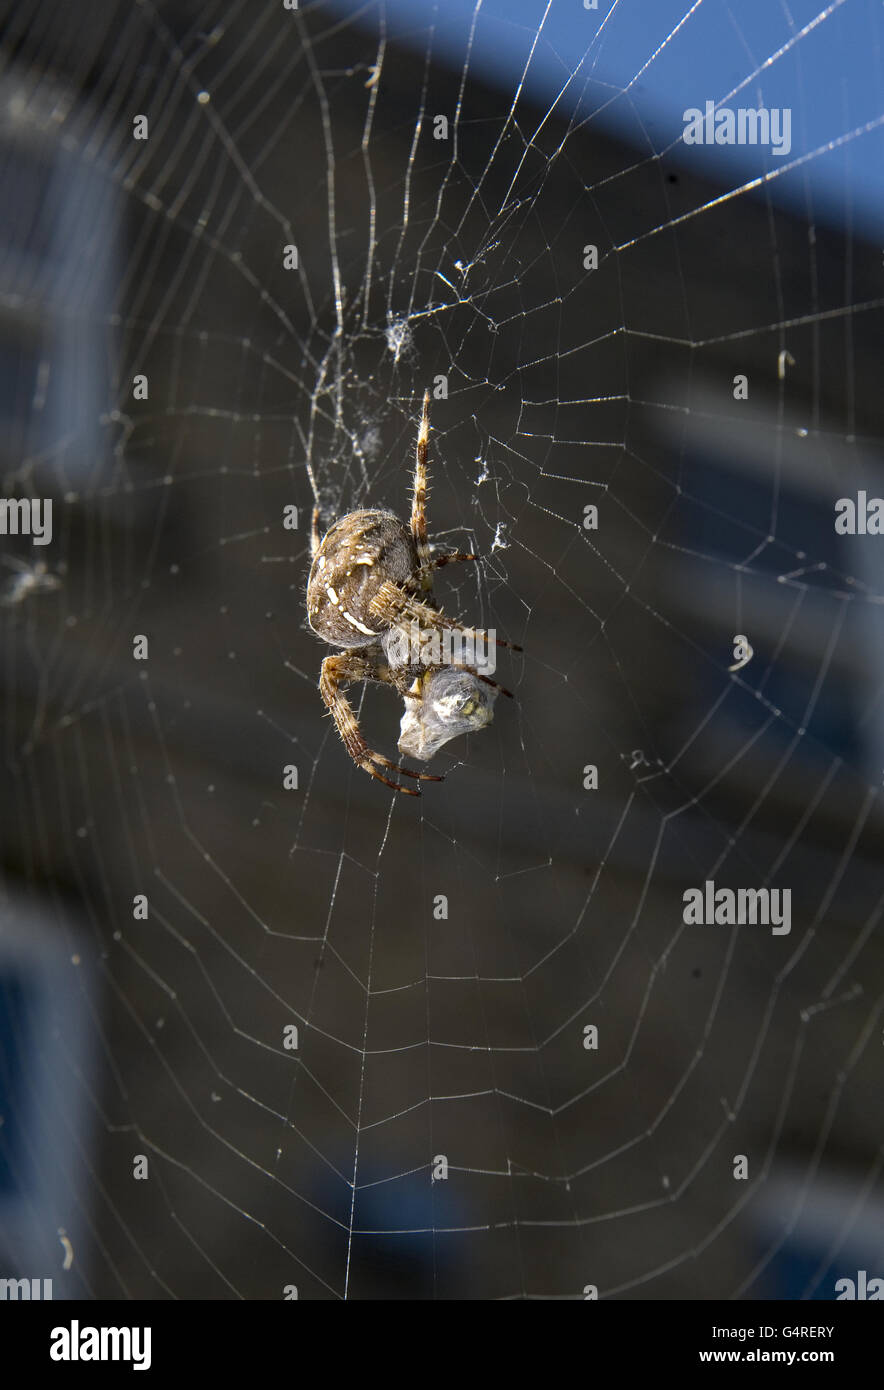 Eine Spinne fängt eine Wespe in ihr Netz. Stockfoto